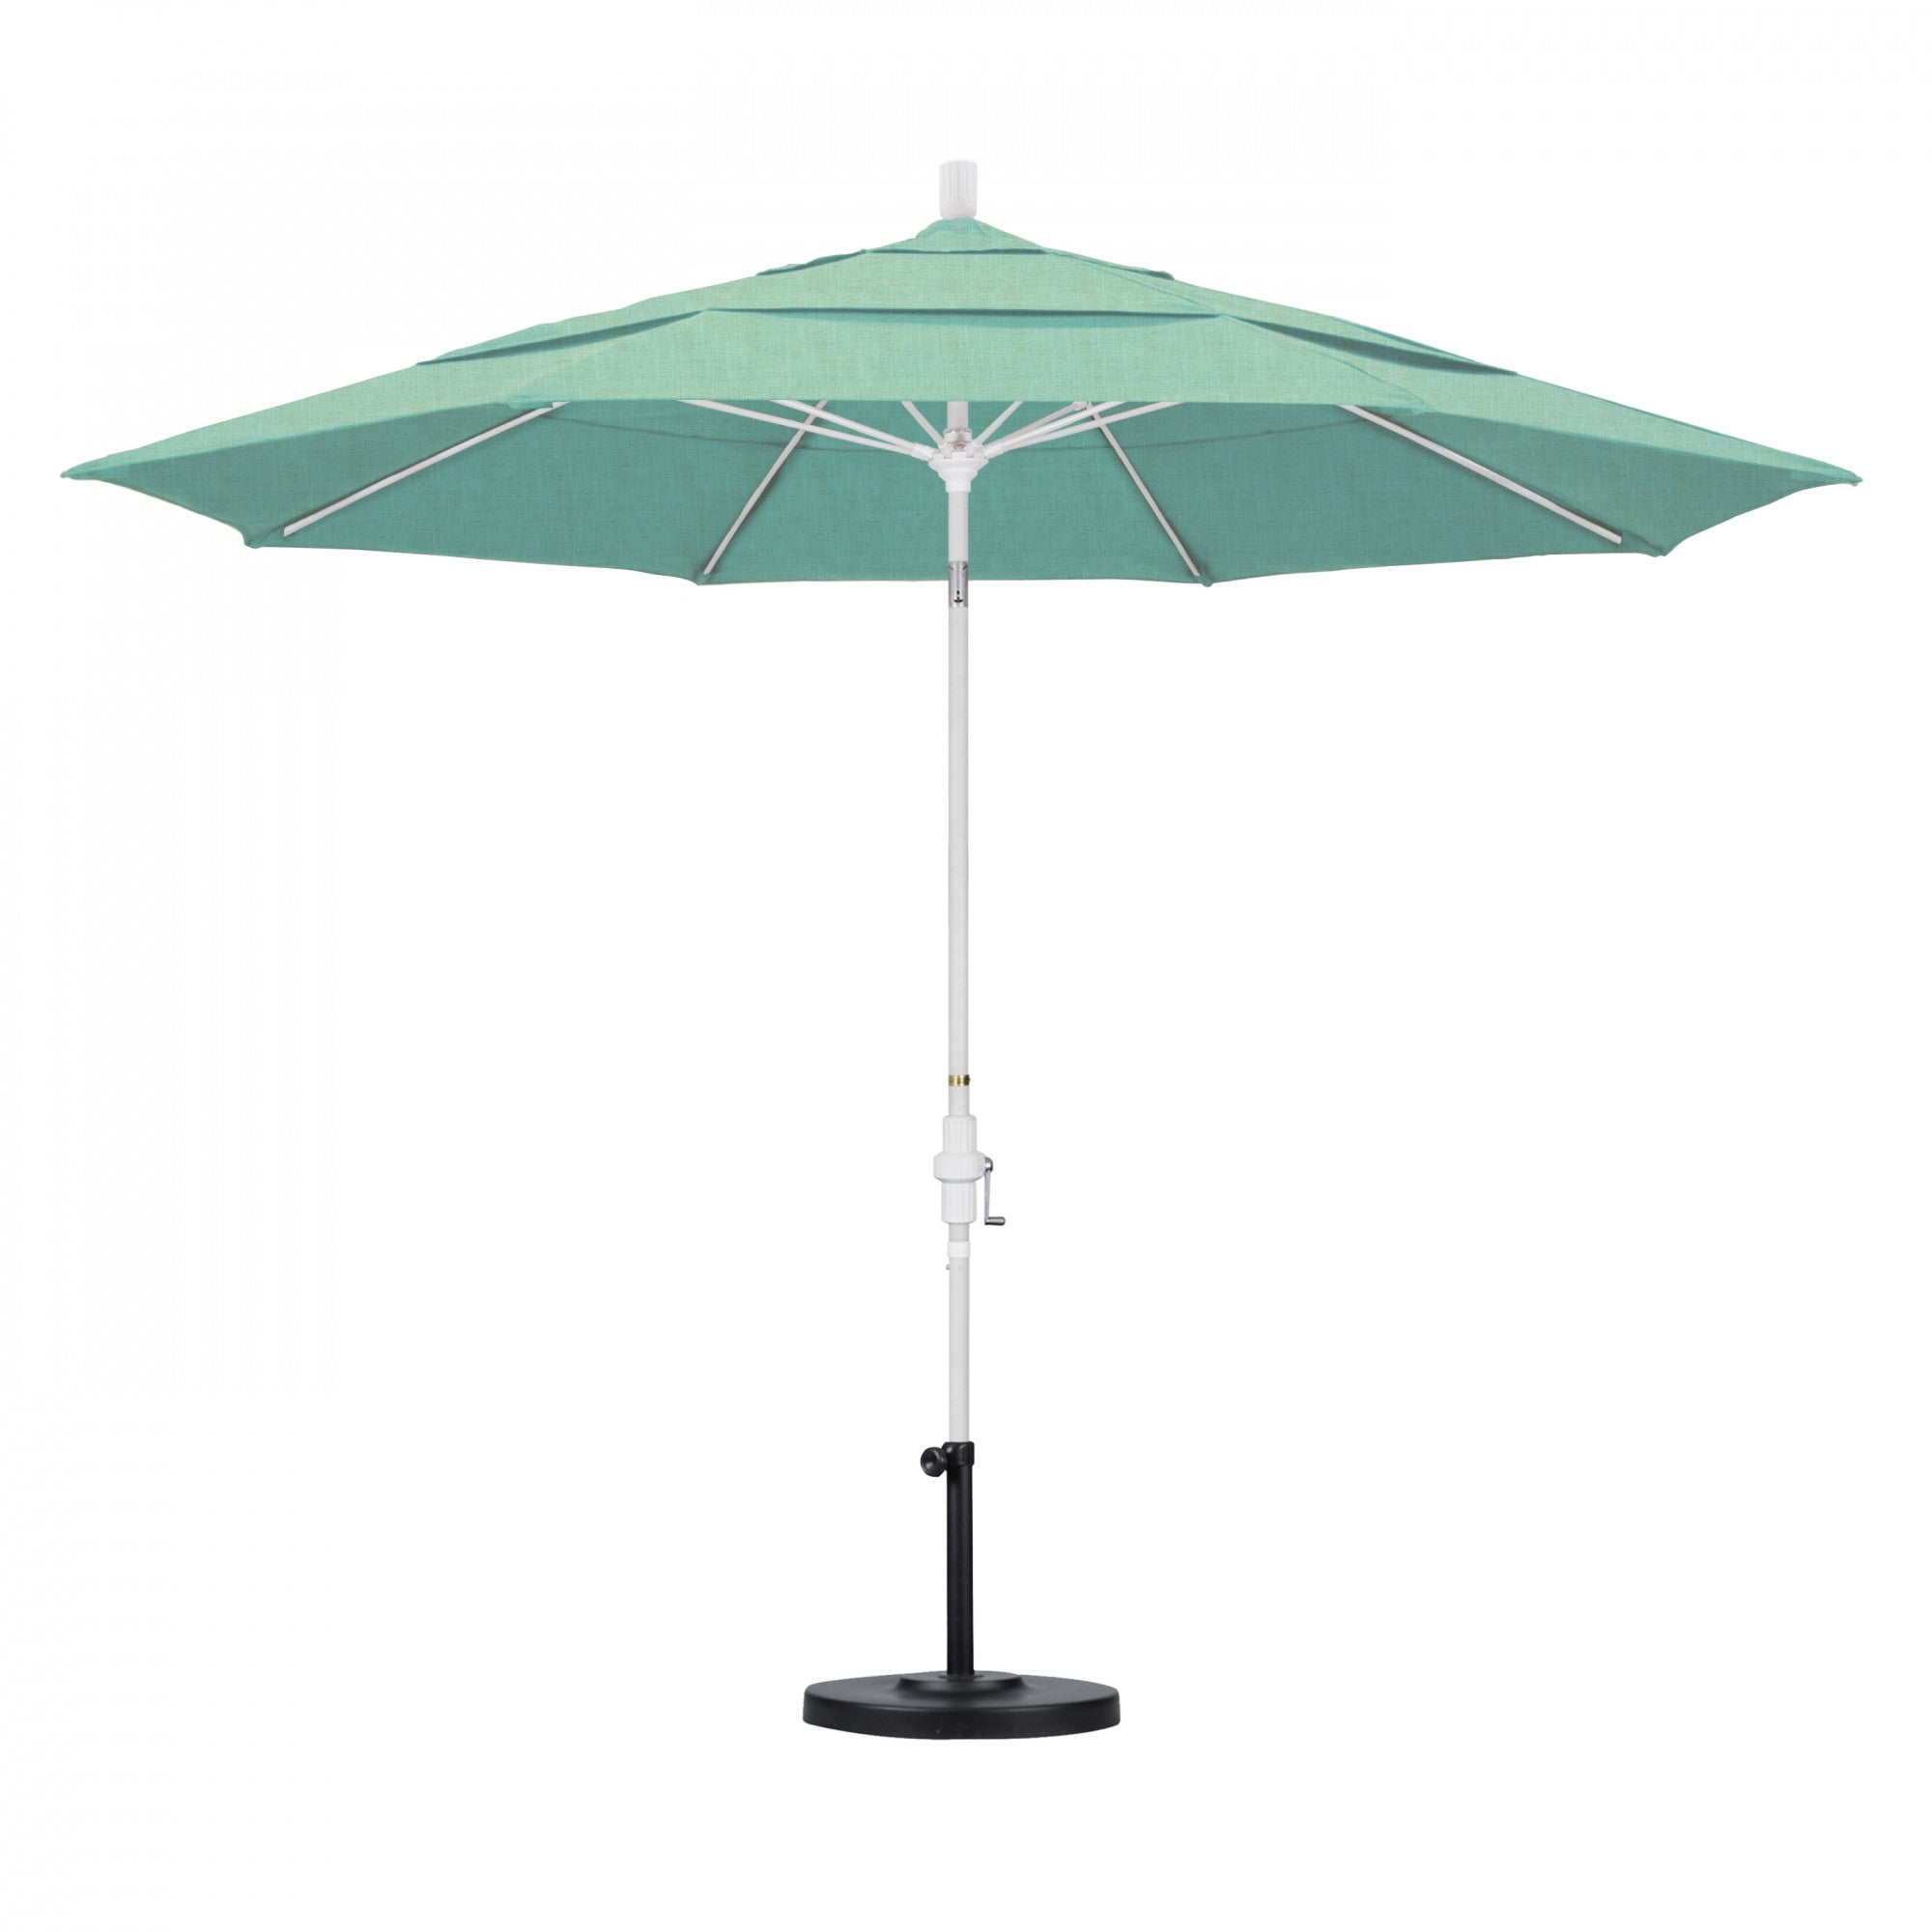 California Umbrella - 11' - Patio Umbrella Umbrella - Aluminum Pole - Spectrum Mist - Sunbrella  - GSCUF118170-48020-DWV